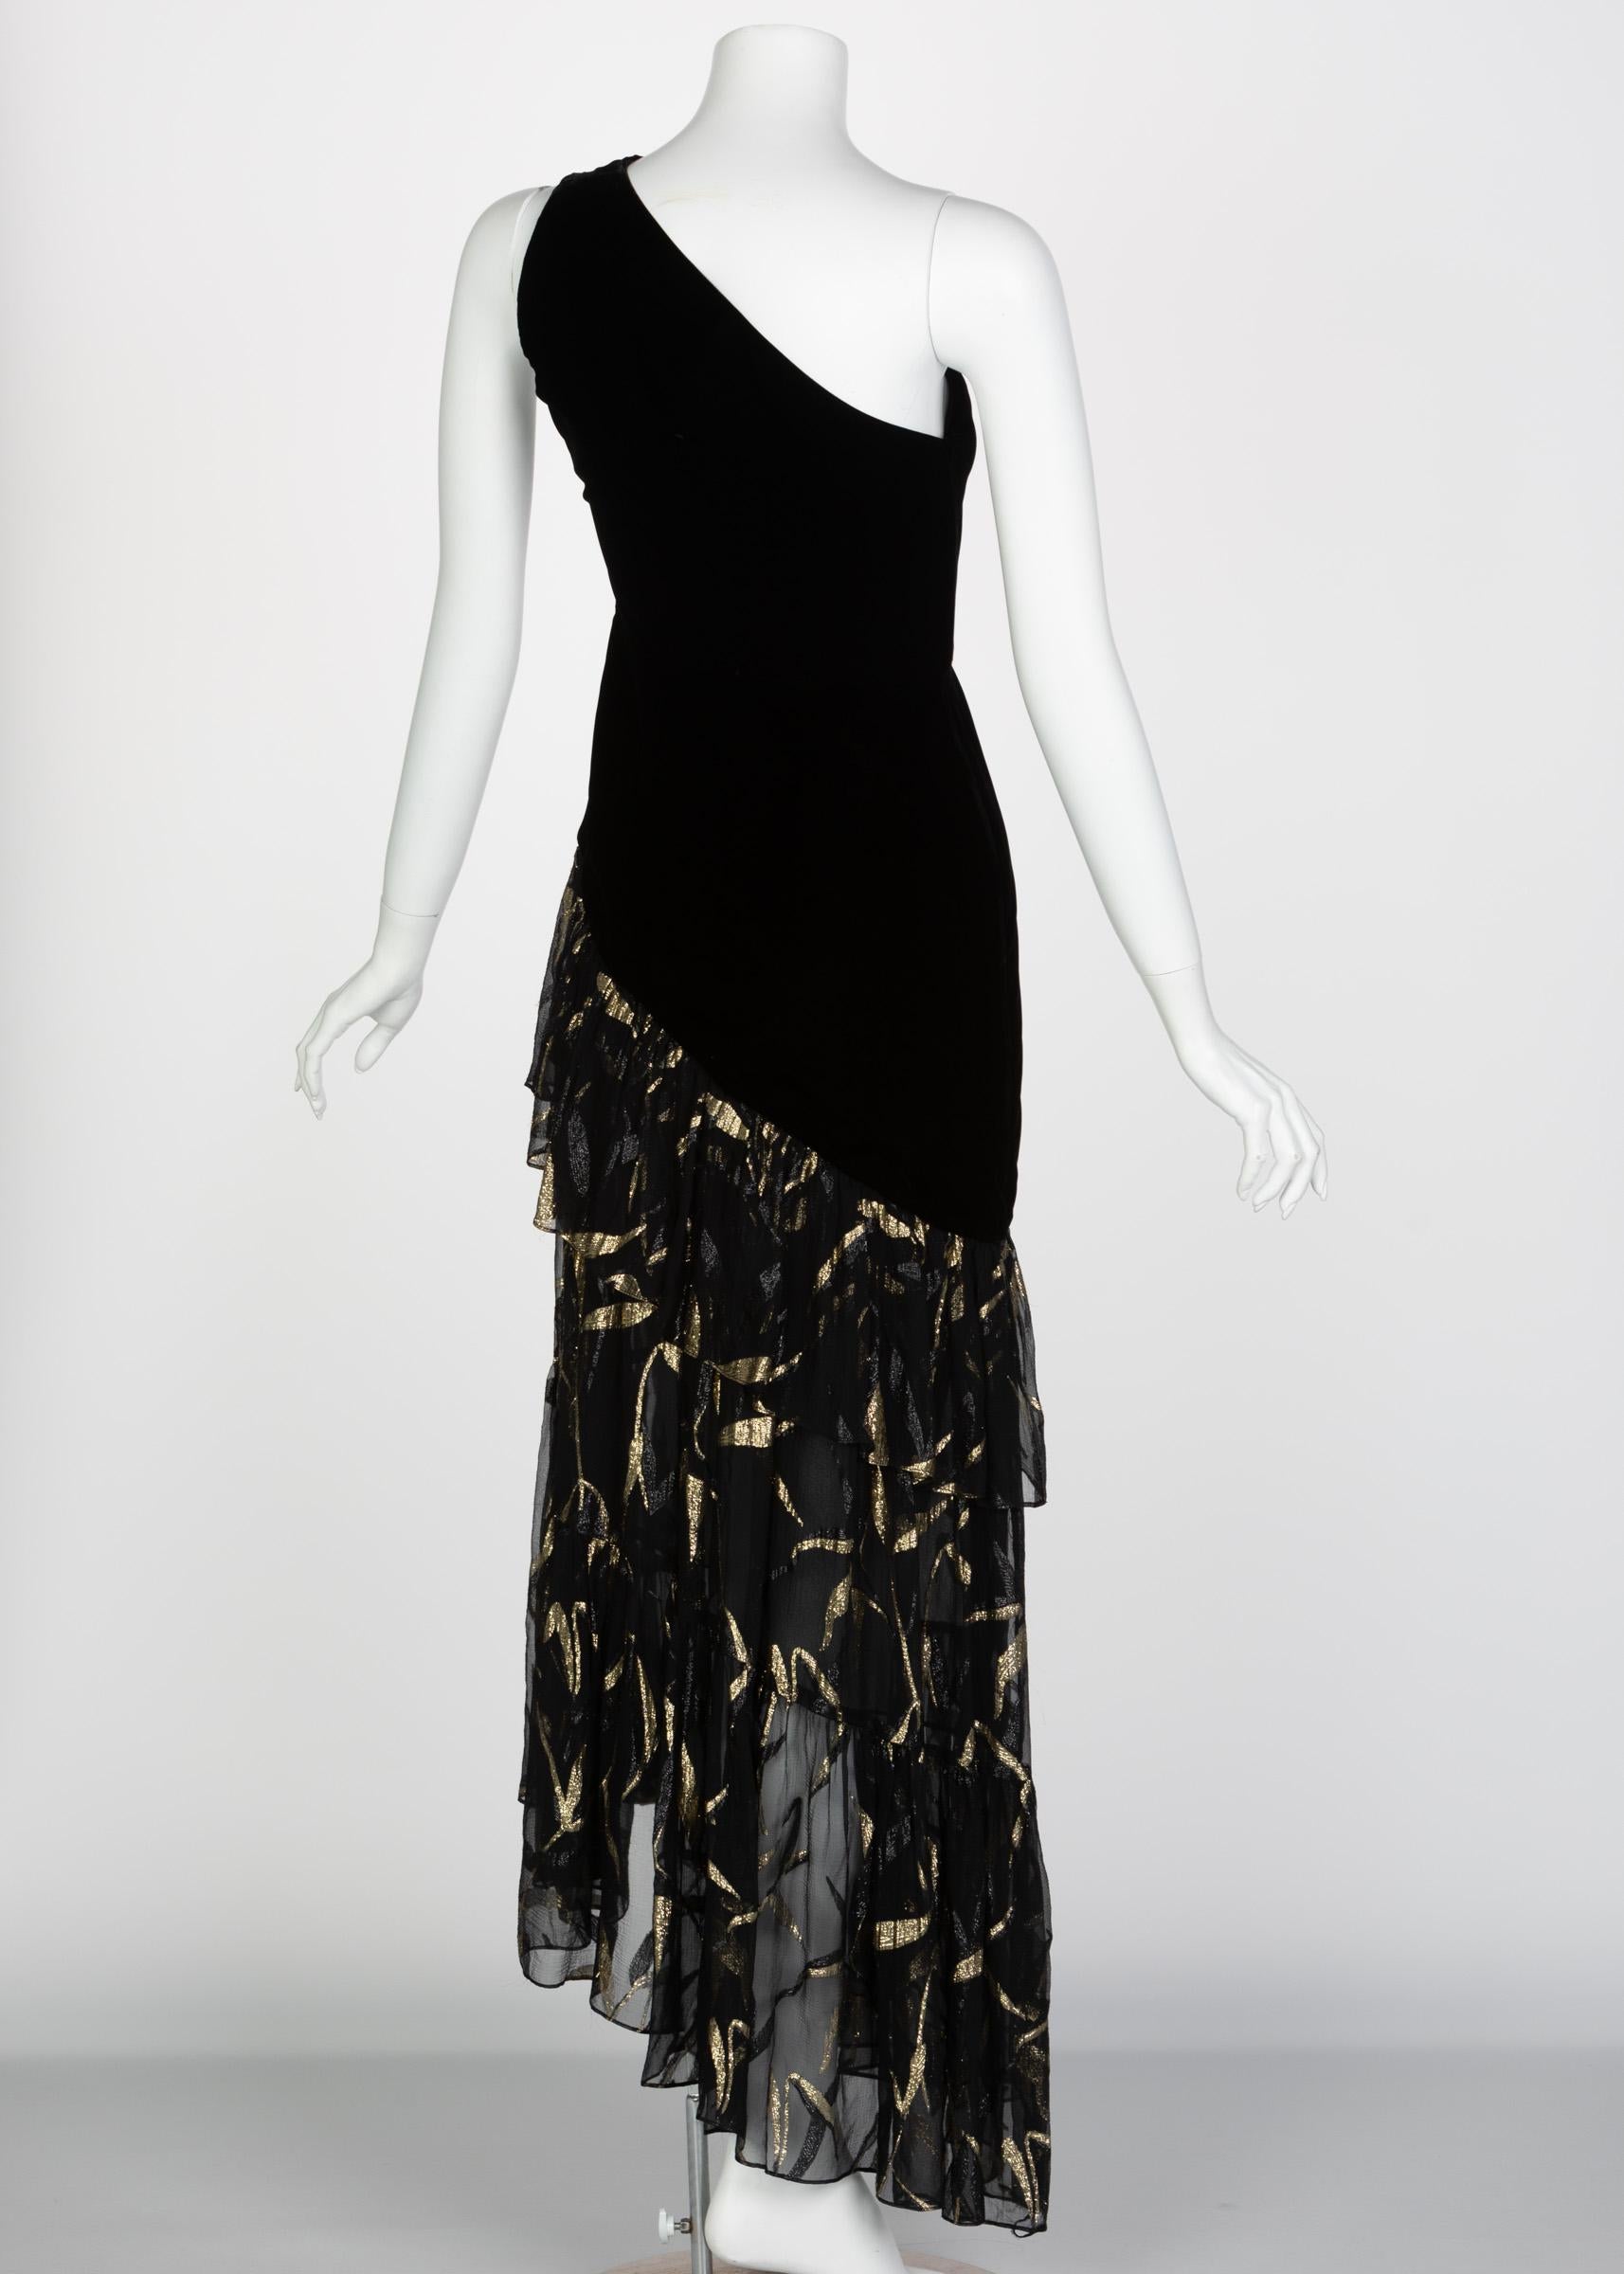 Women's Saint Laurent YSL One shoulder Black Velvet Metallic Layered Dress, 1980s